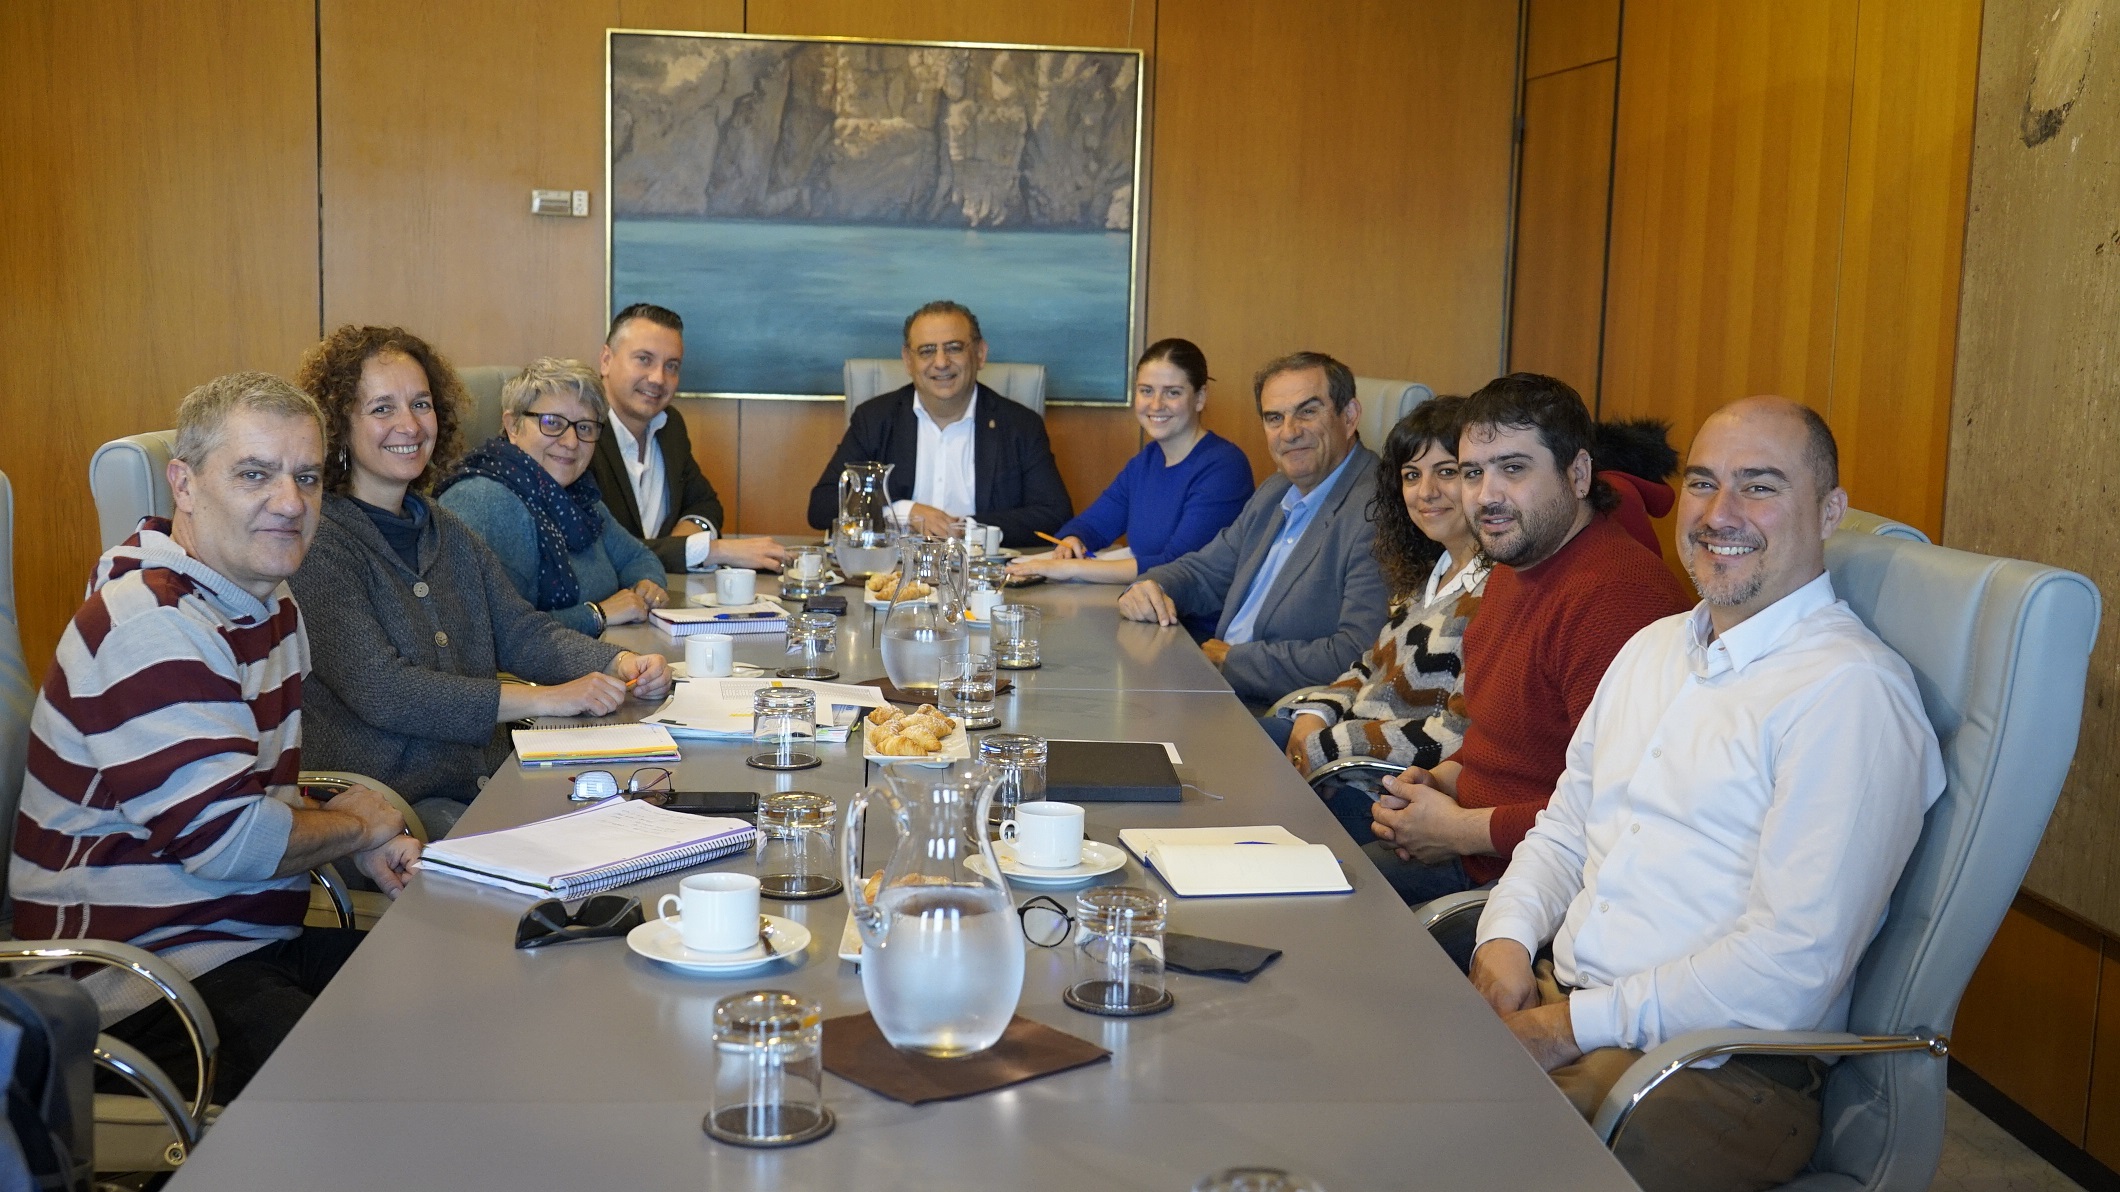 La vicepresidenta y consellera de Sostenibilitat y Medi Ambient Aurora Ribot i el alcalde Calvià Alfonso Rodríguez con sus respectivos equipos de trabajo.